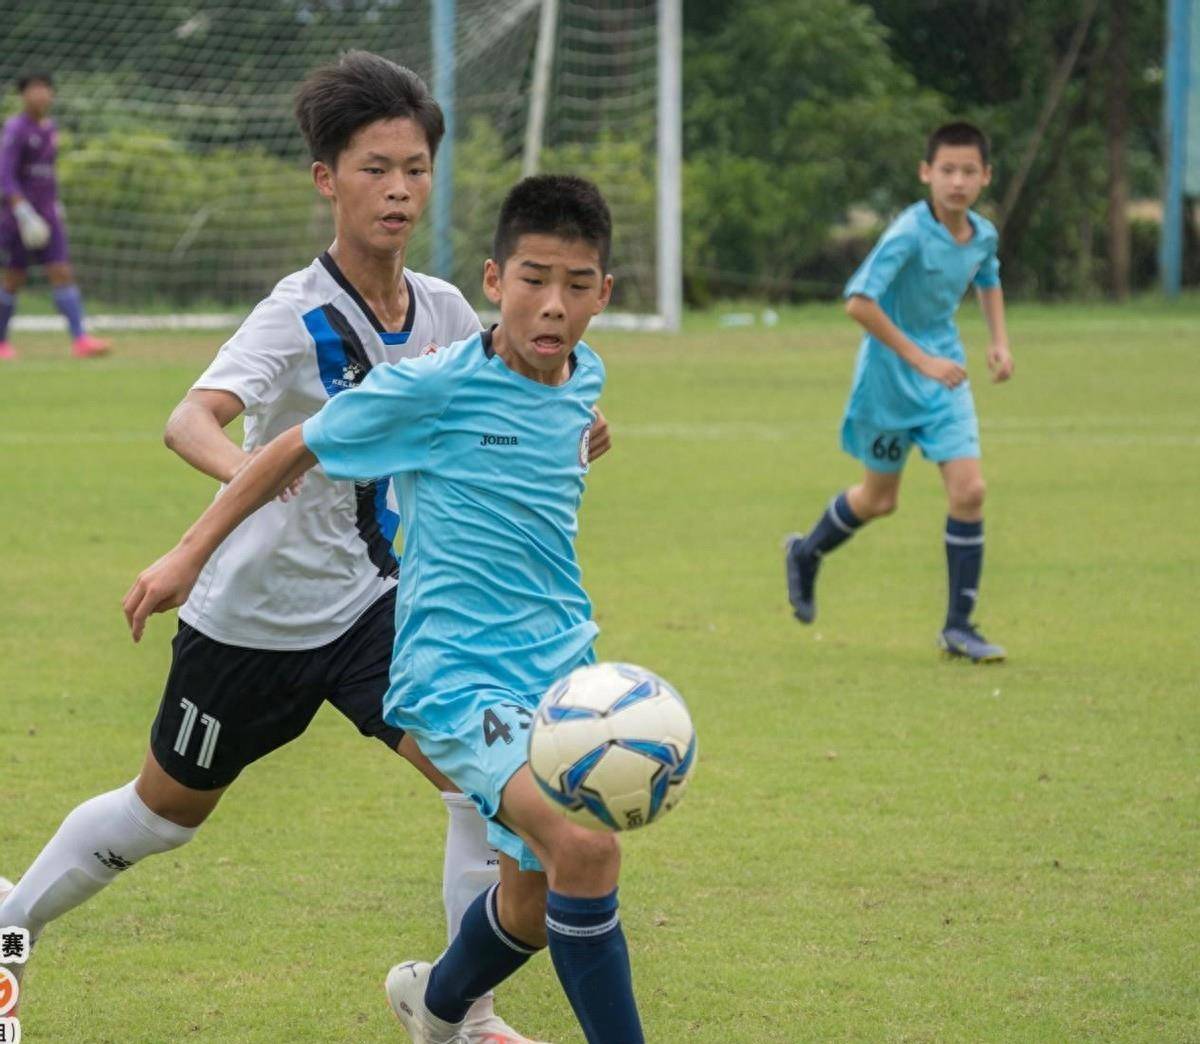 2023年冠军荟·青少年足球挑战赛：打造青少年校园足球高水平赛事